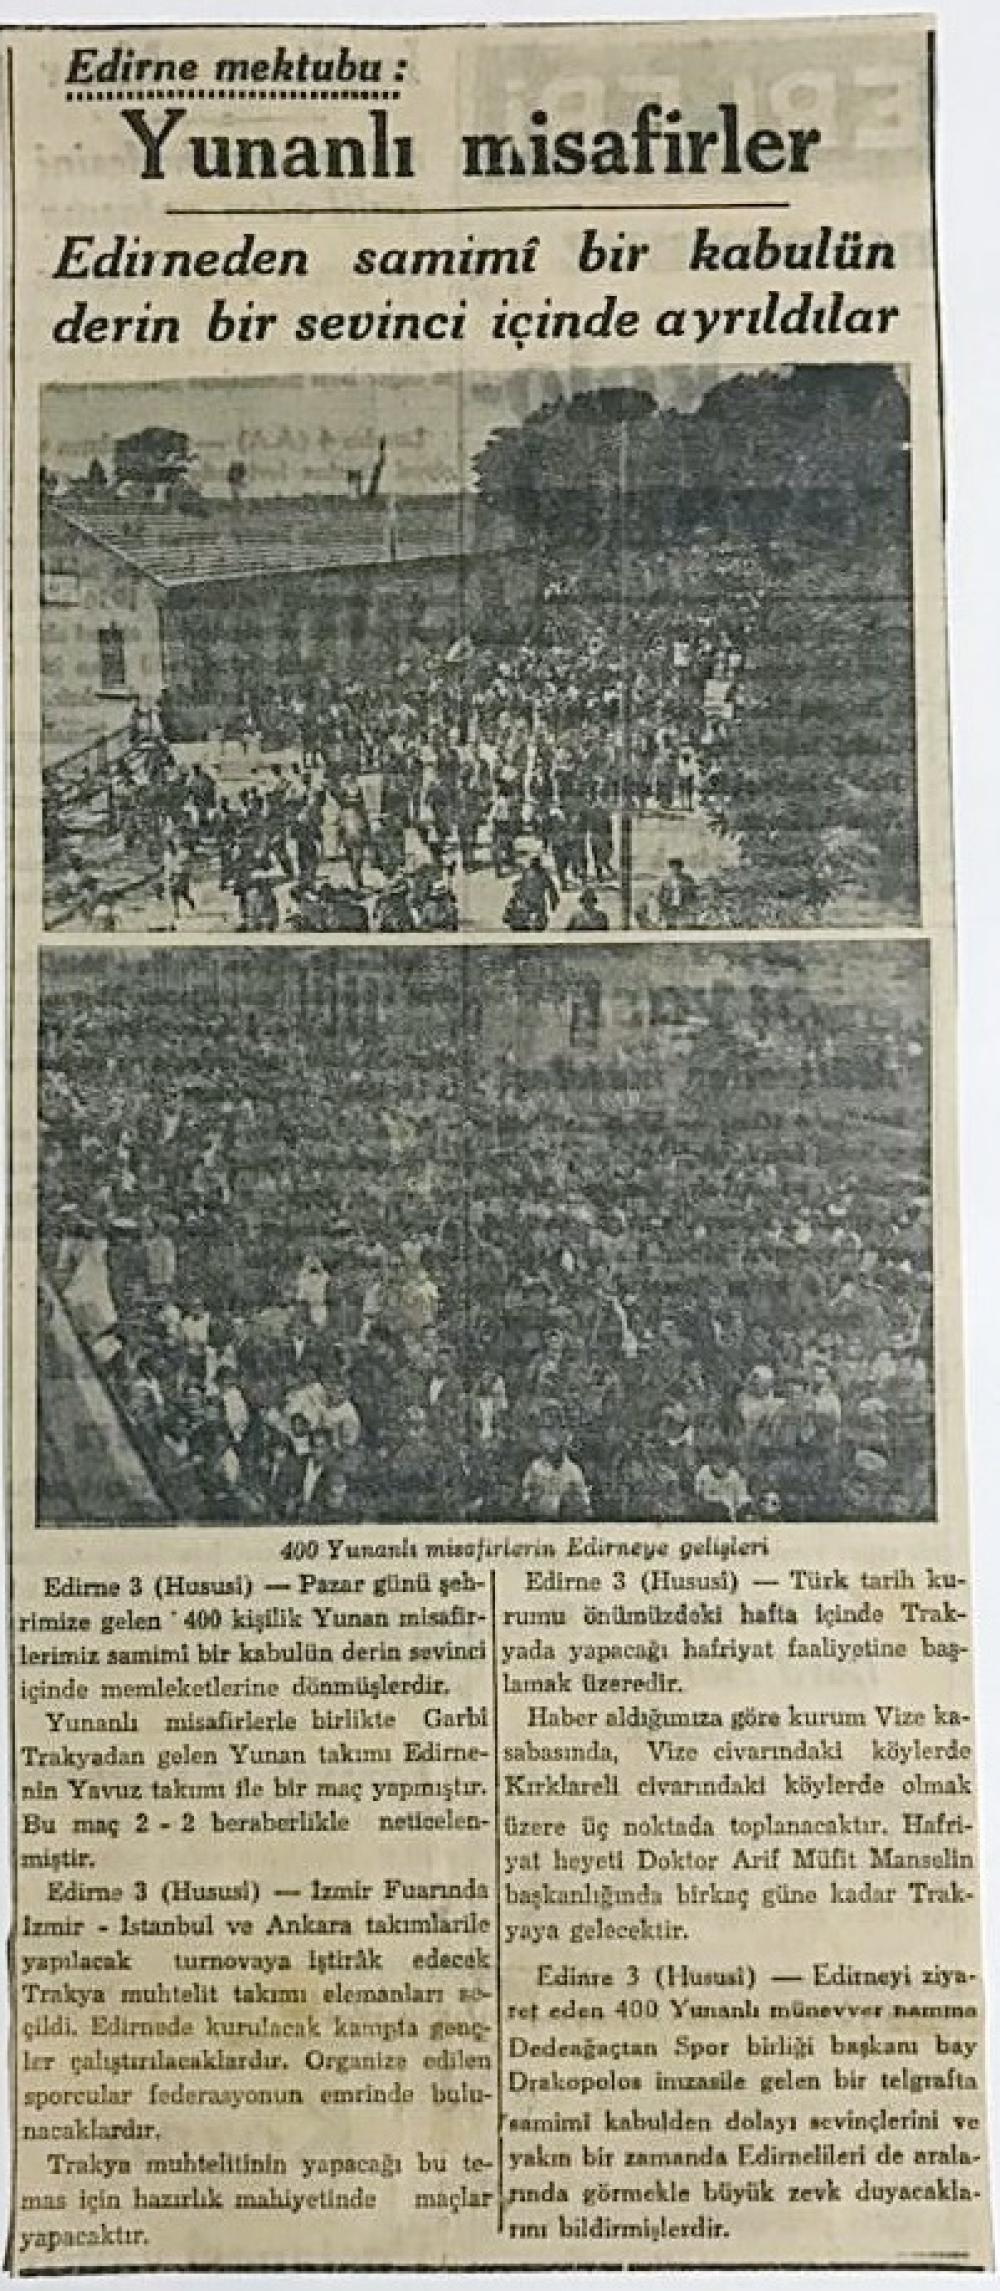 Trakya ve Edine'ye ait 1938 yılına ait, 6 adet gazete haberi / Dergi - gazete reklamları